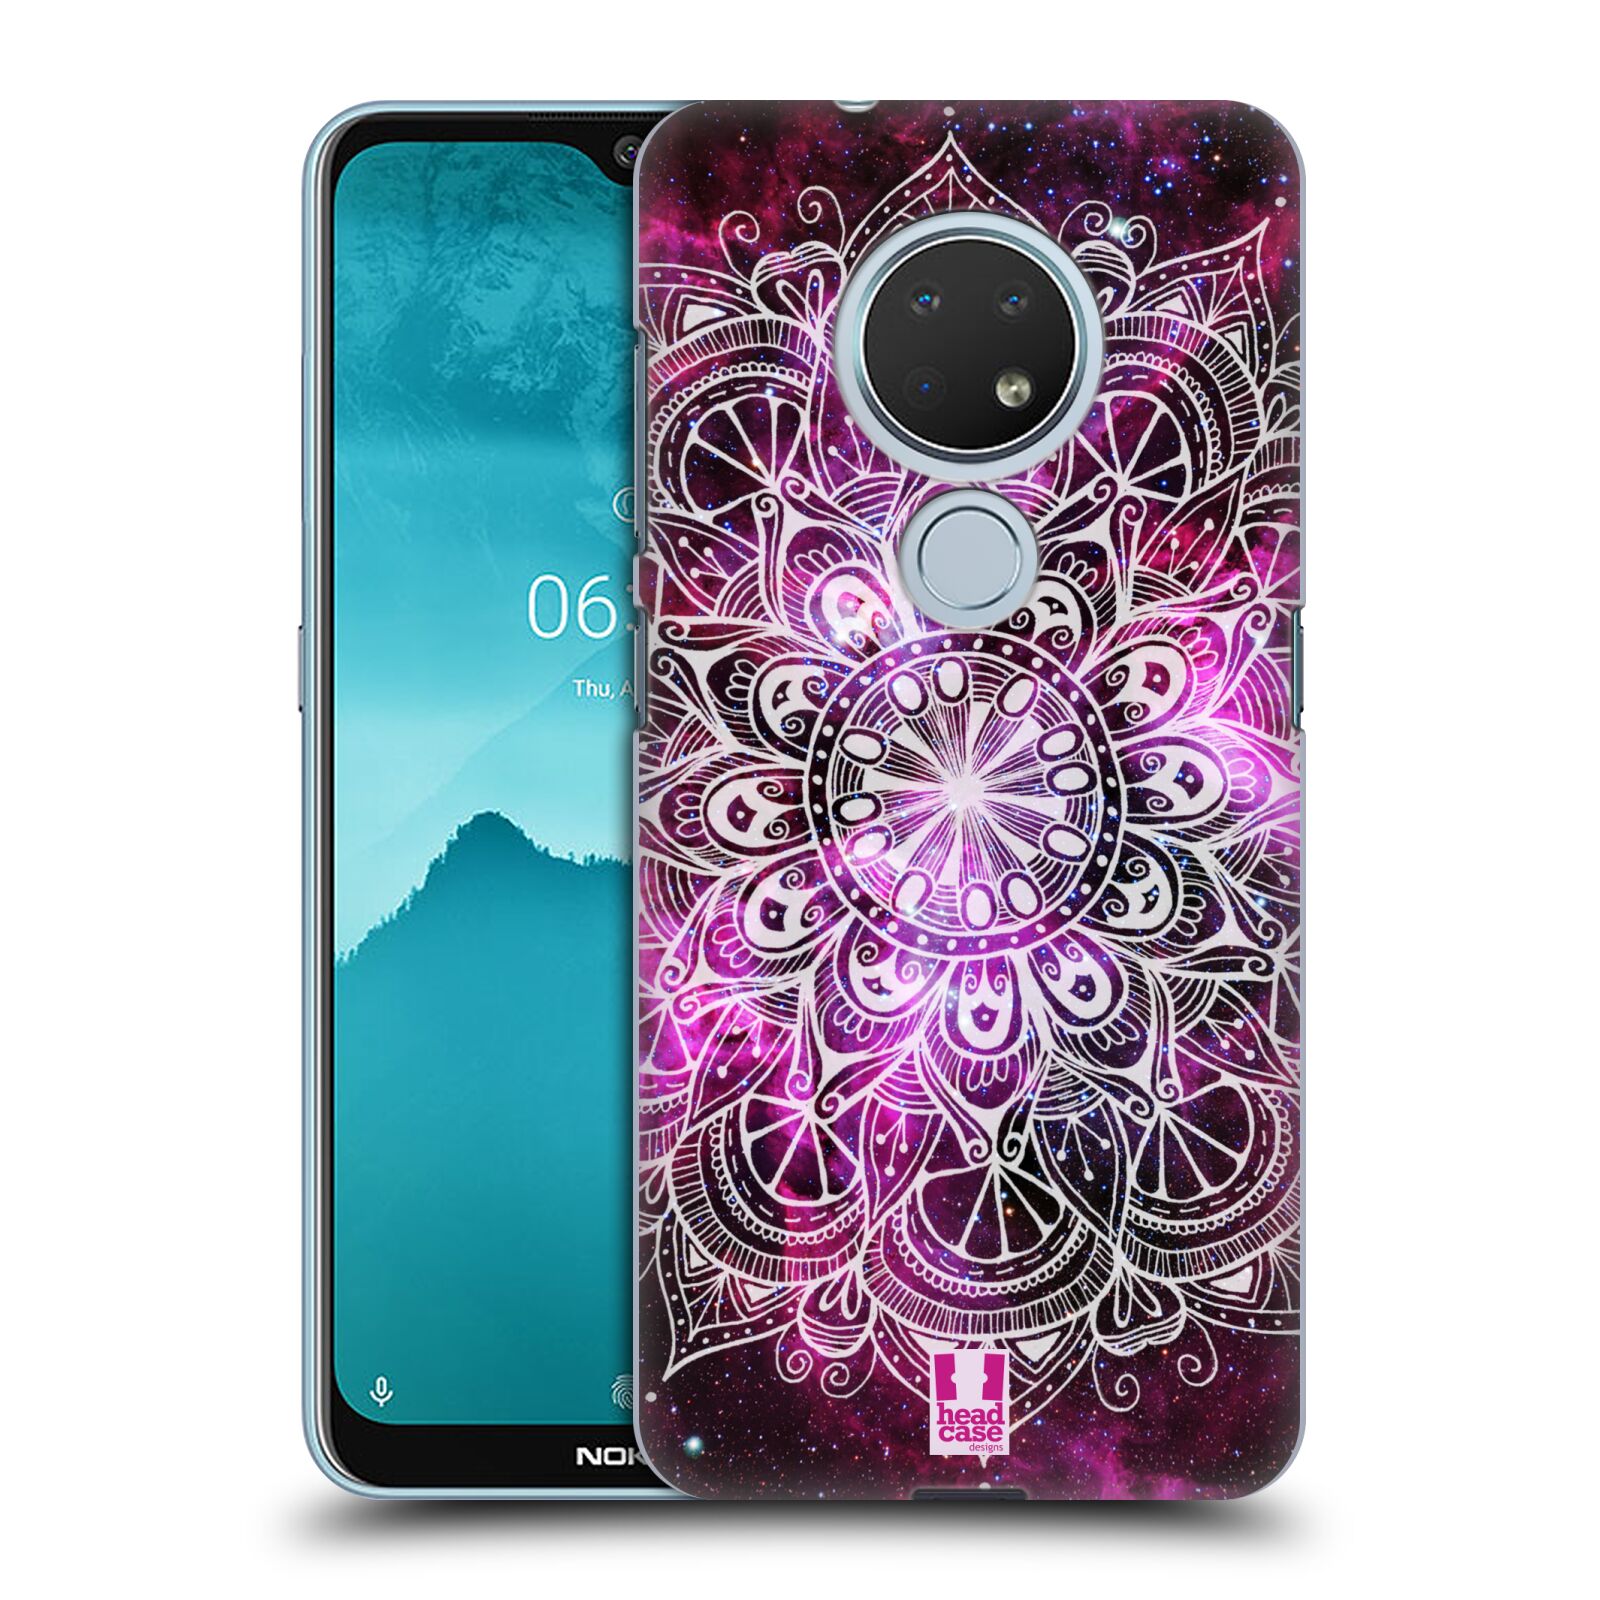 Pouzdro na mobil Nokia 6.2 - HEAD CASE - vzor Indie Mandala slunce barevná FIALOVÁ MLHOVINA